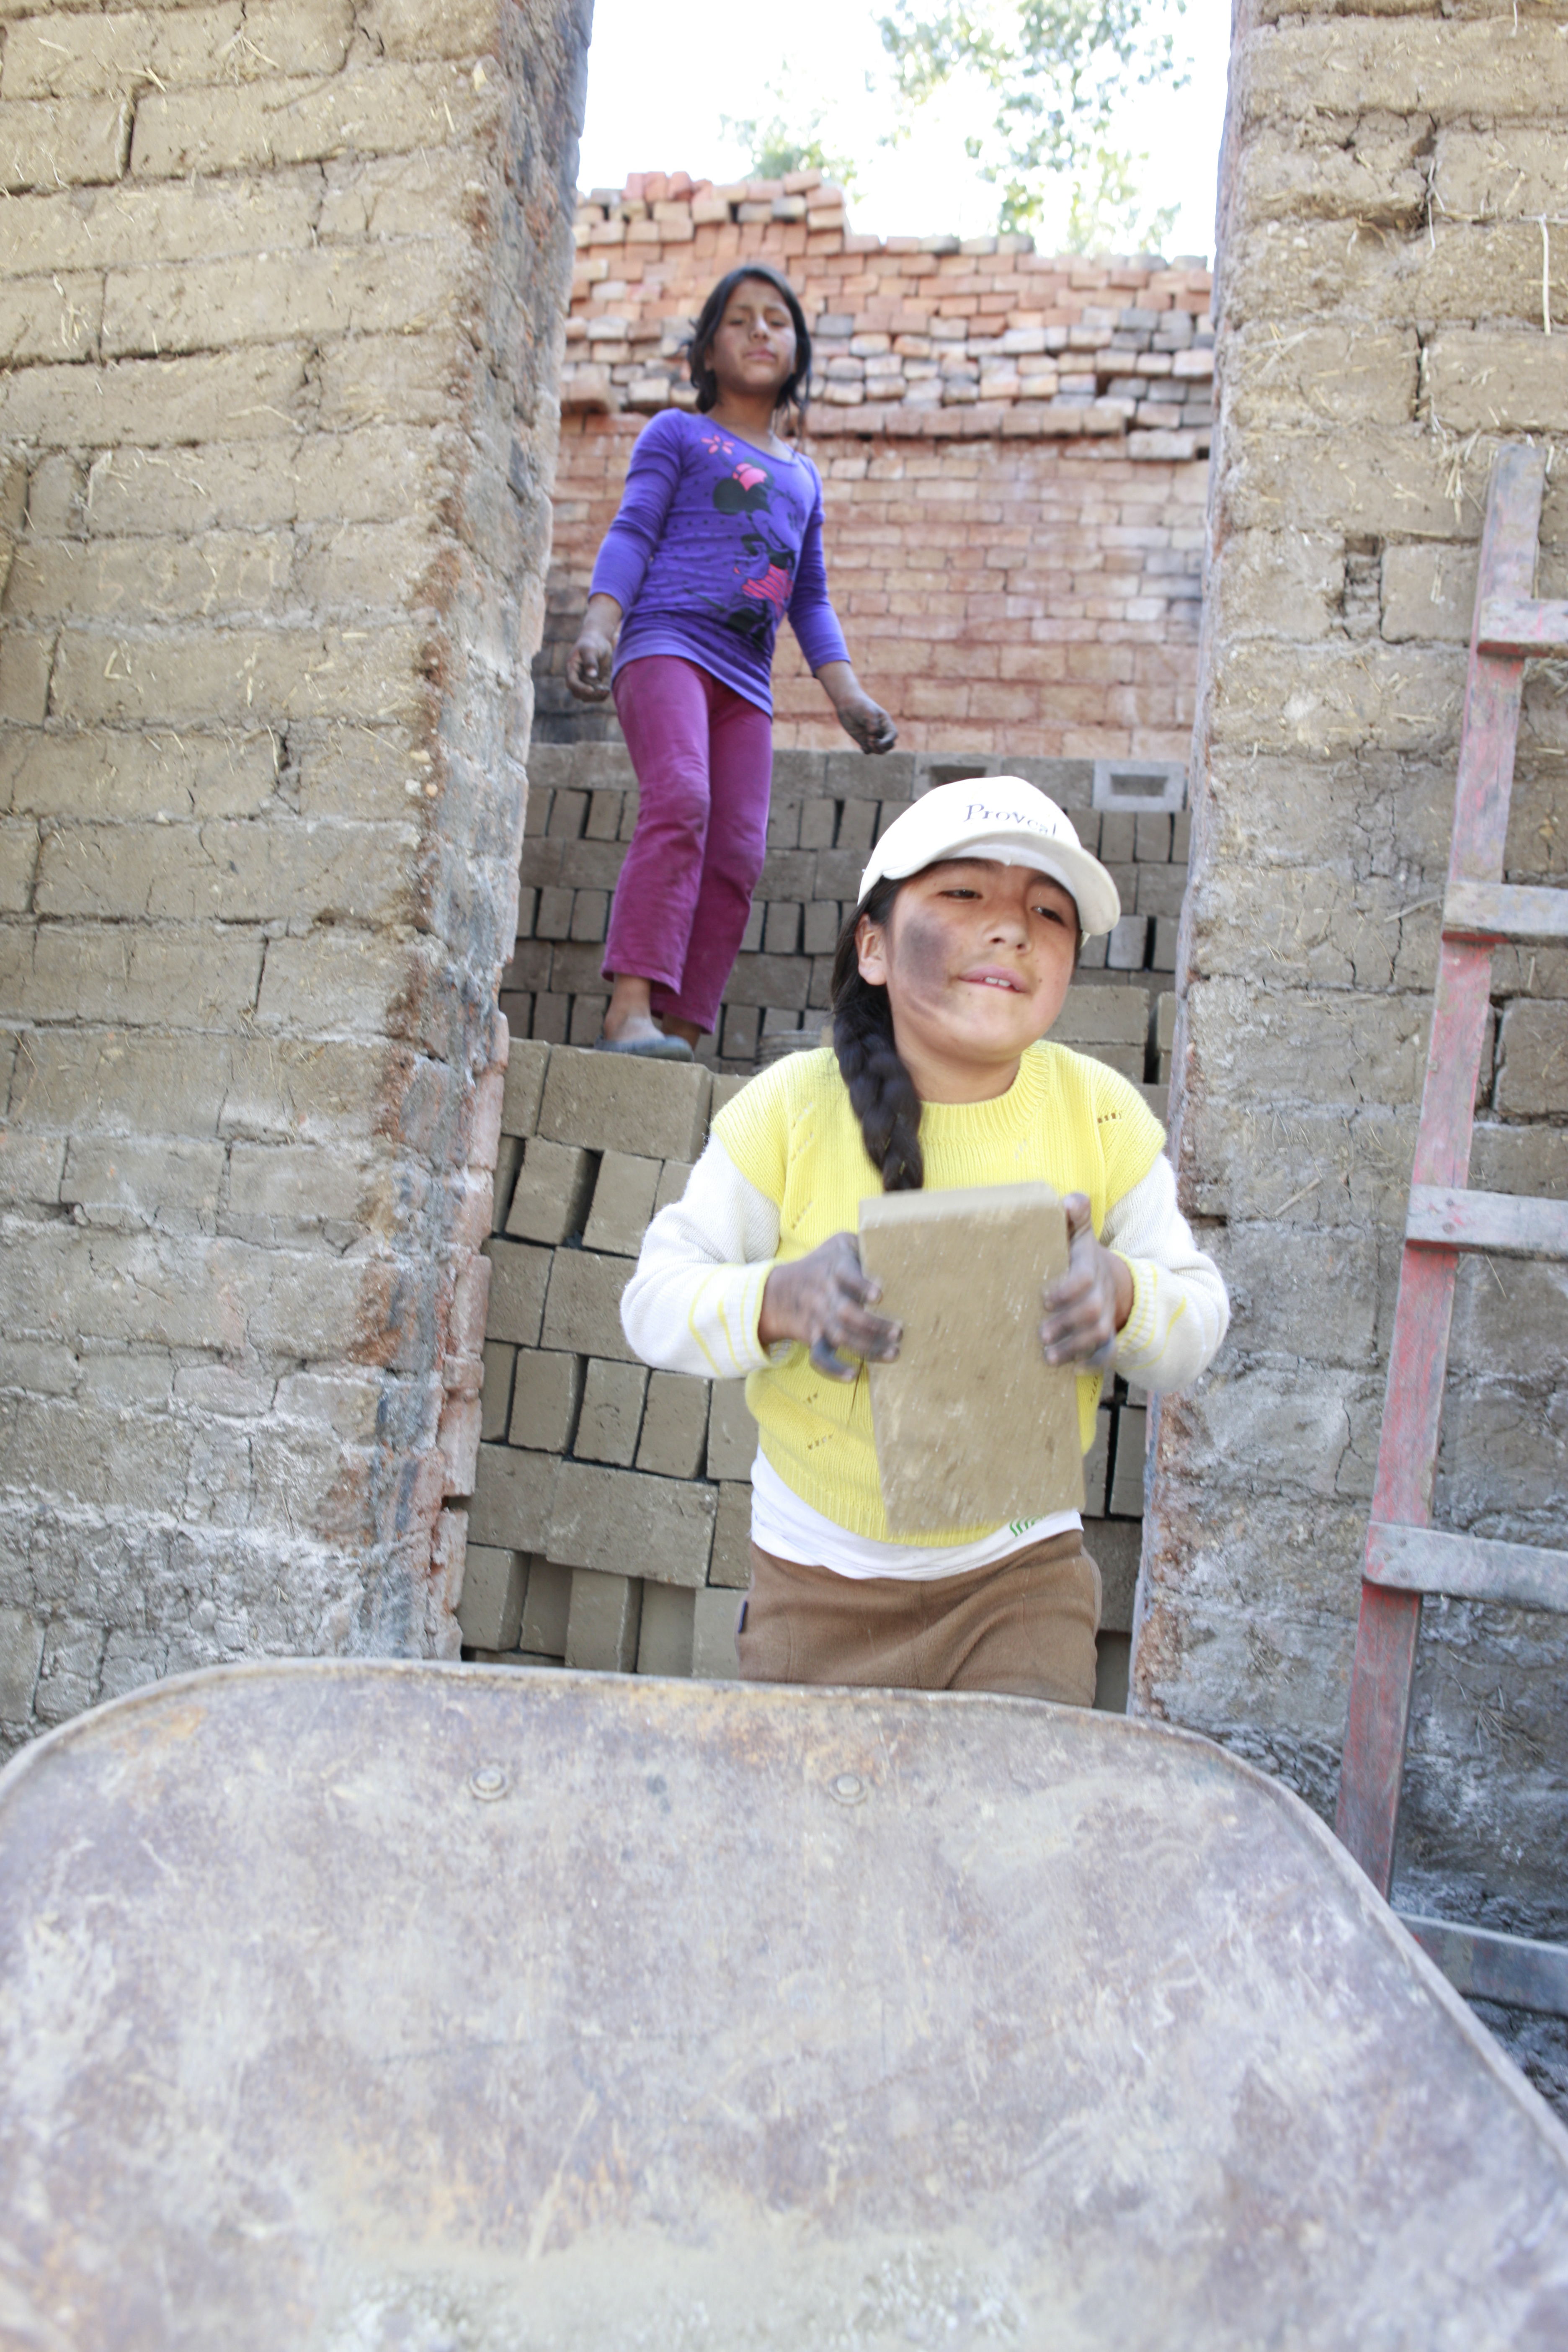 Margarita in der Ziegelei: Reise nach Peru, Cajamarca. Kinderarbeit in den Ziegeleien. (Quelle: Christian Herrmanny)